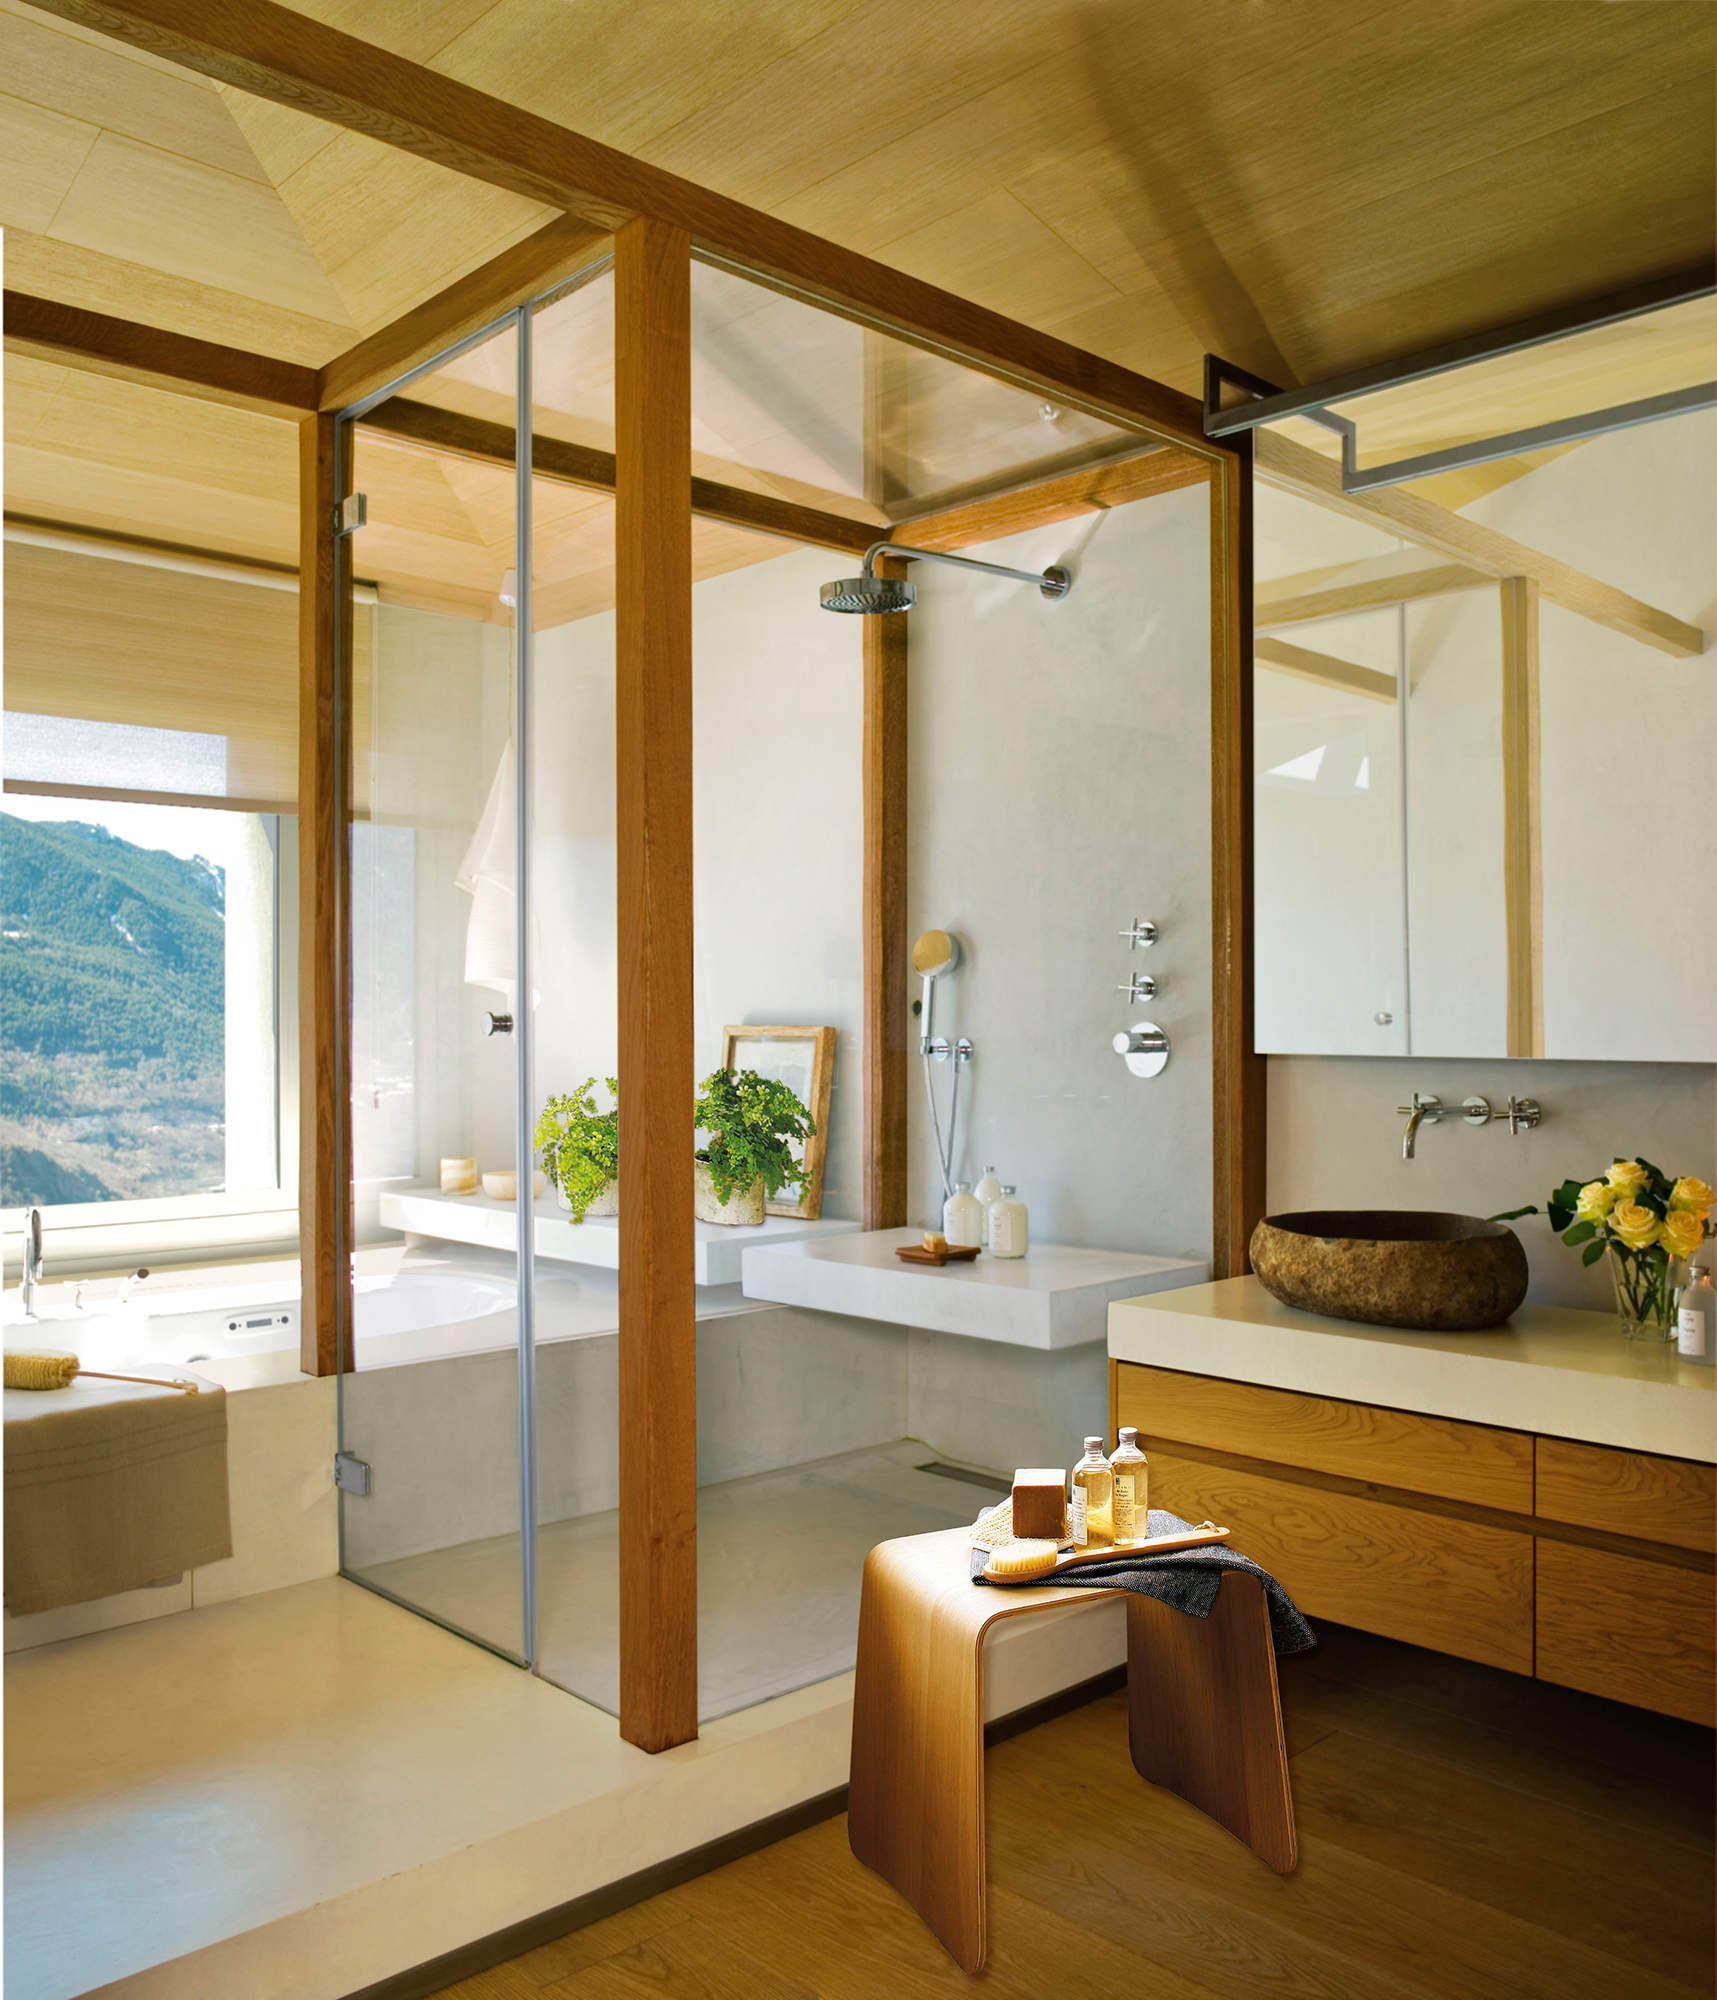 Baño con ducha separada por una pieza escultórica de madera y cristal. 